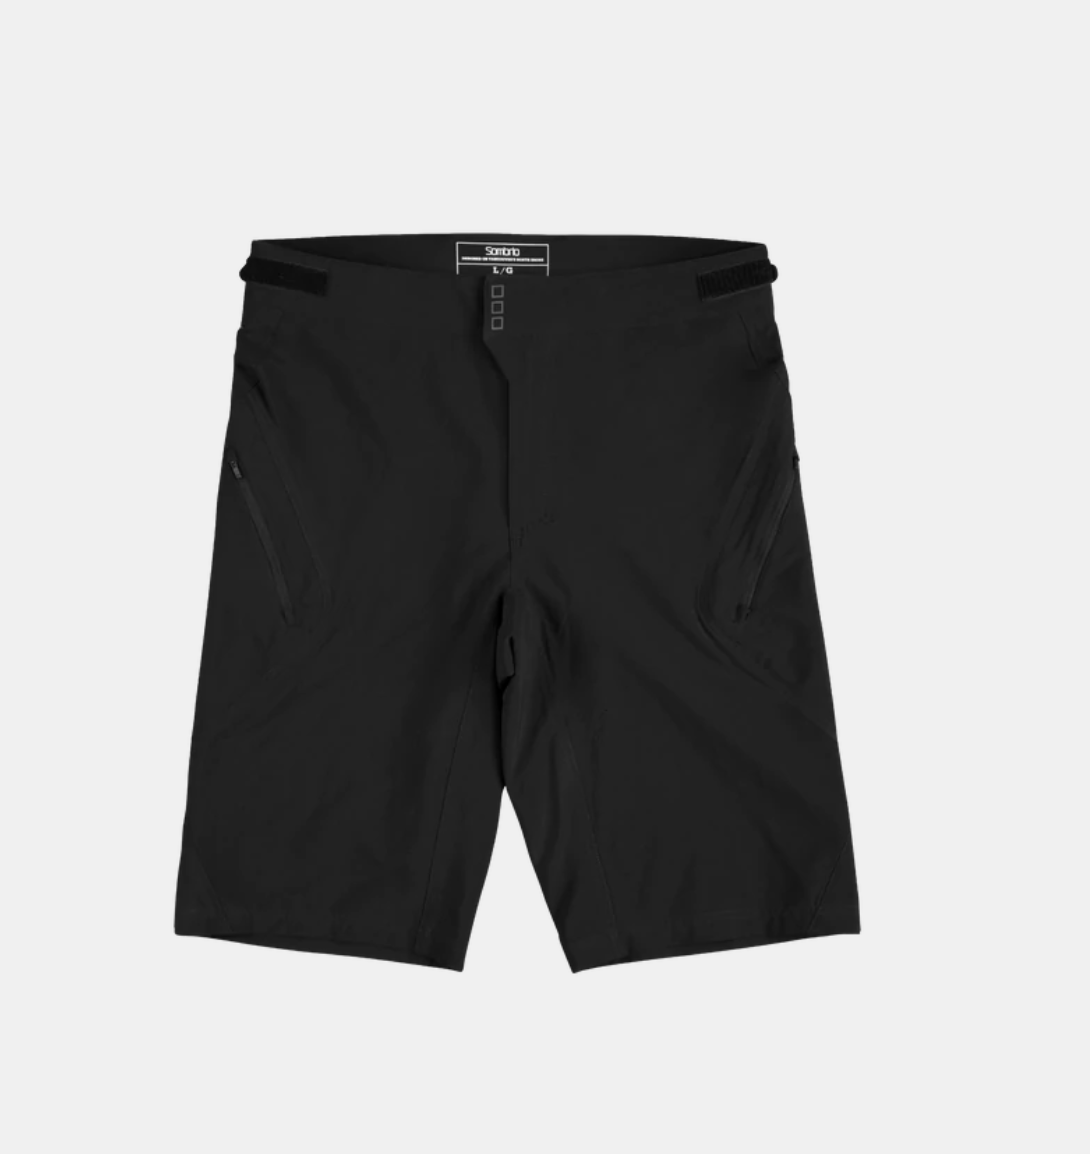 Sombrio Highline Shorts